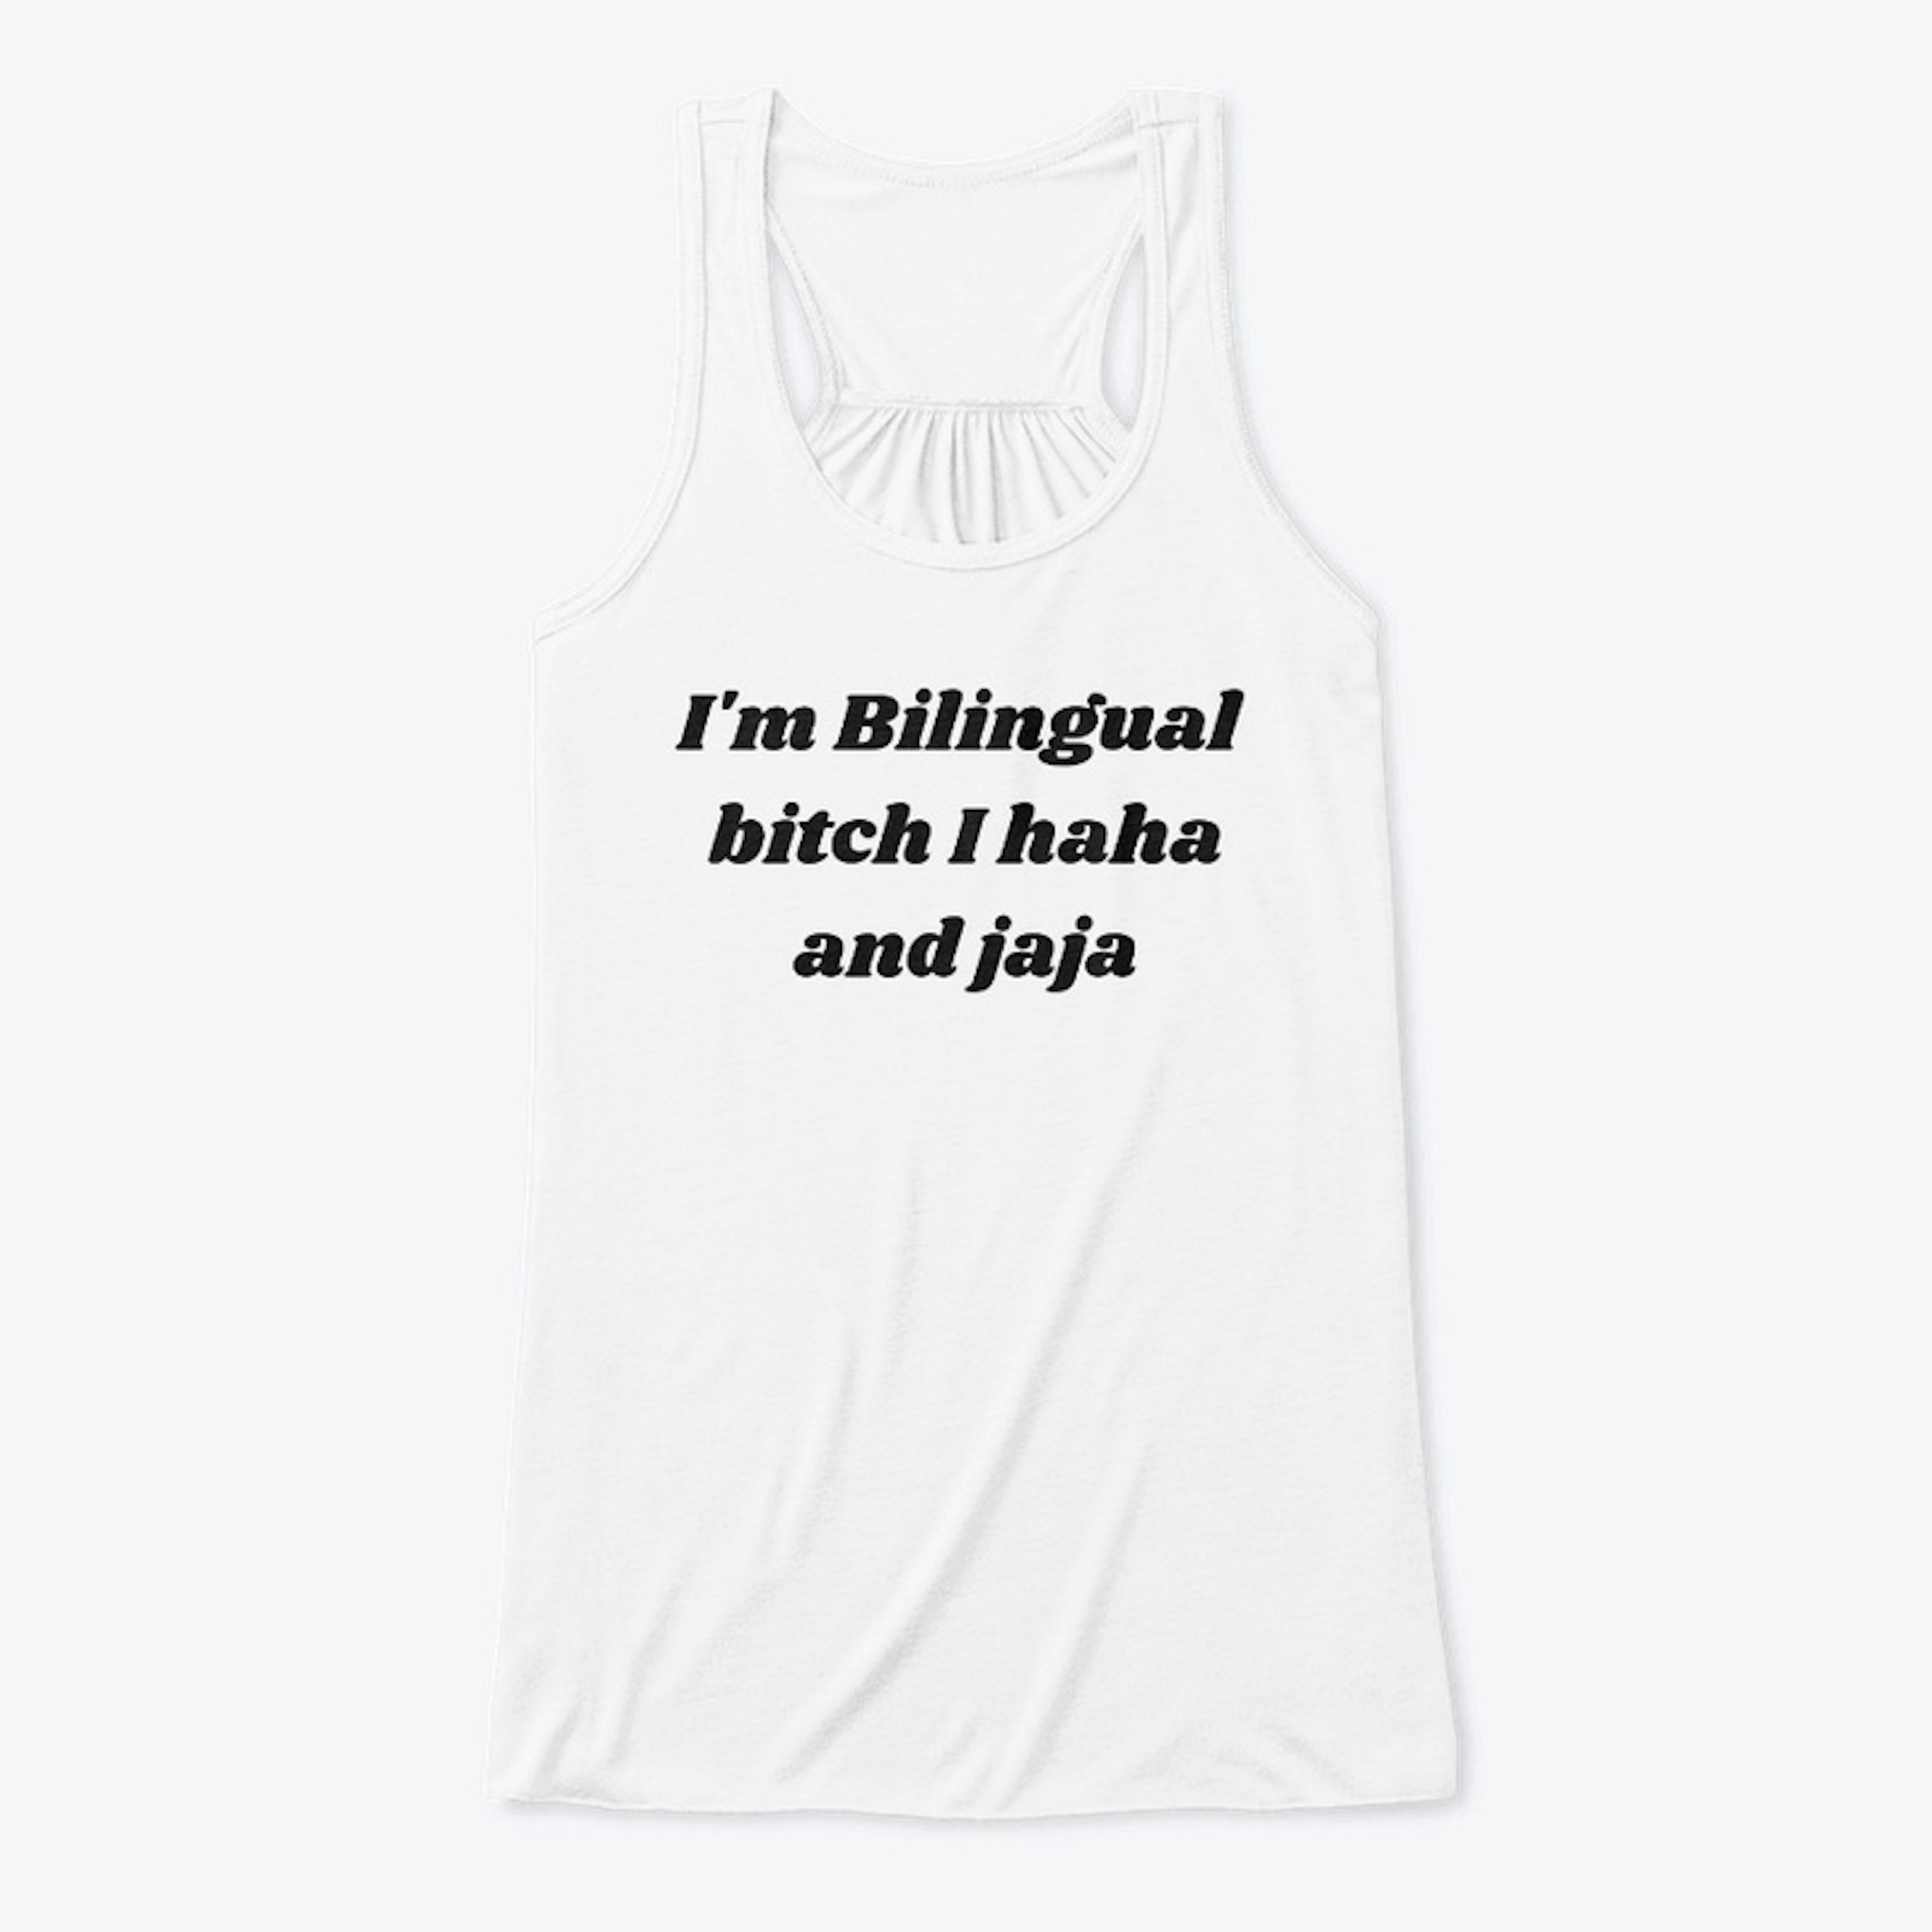 Bilingual bitch